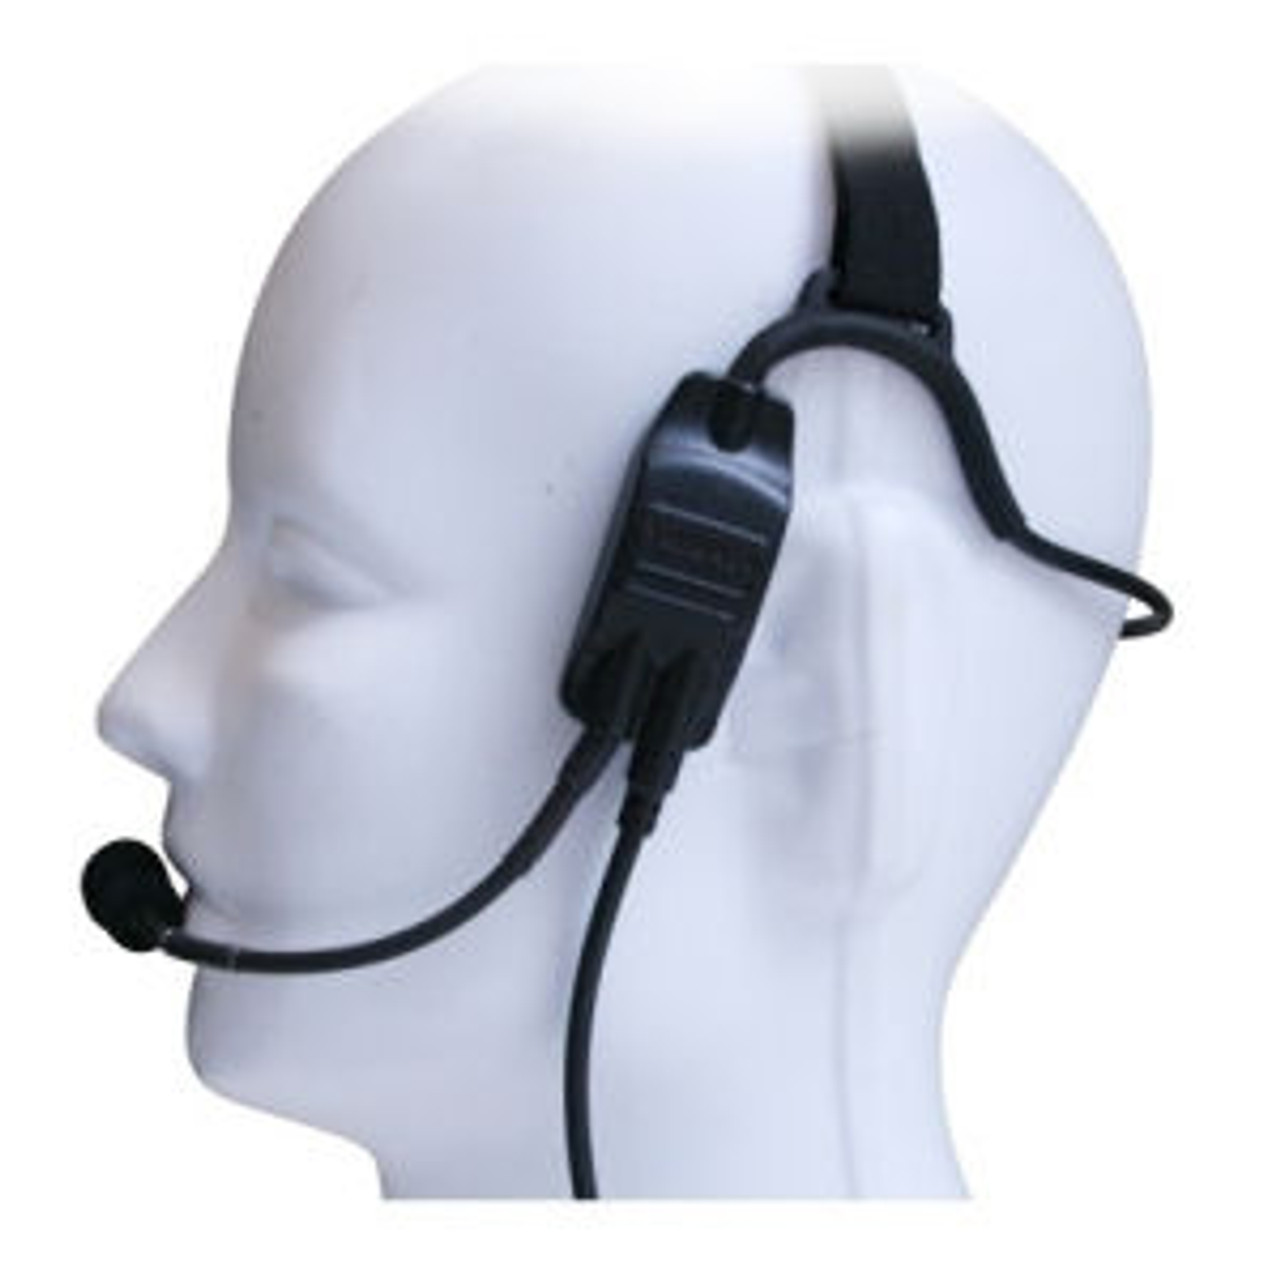 Kenwood TK-230 Temple Transducer Headset